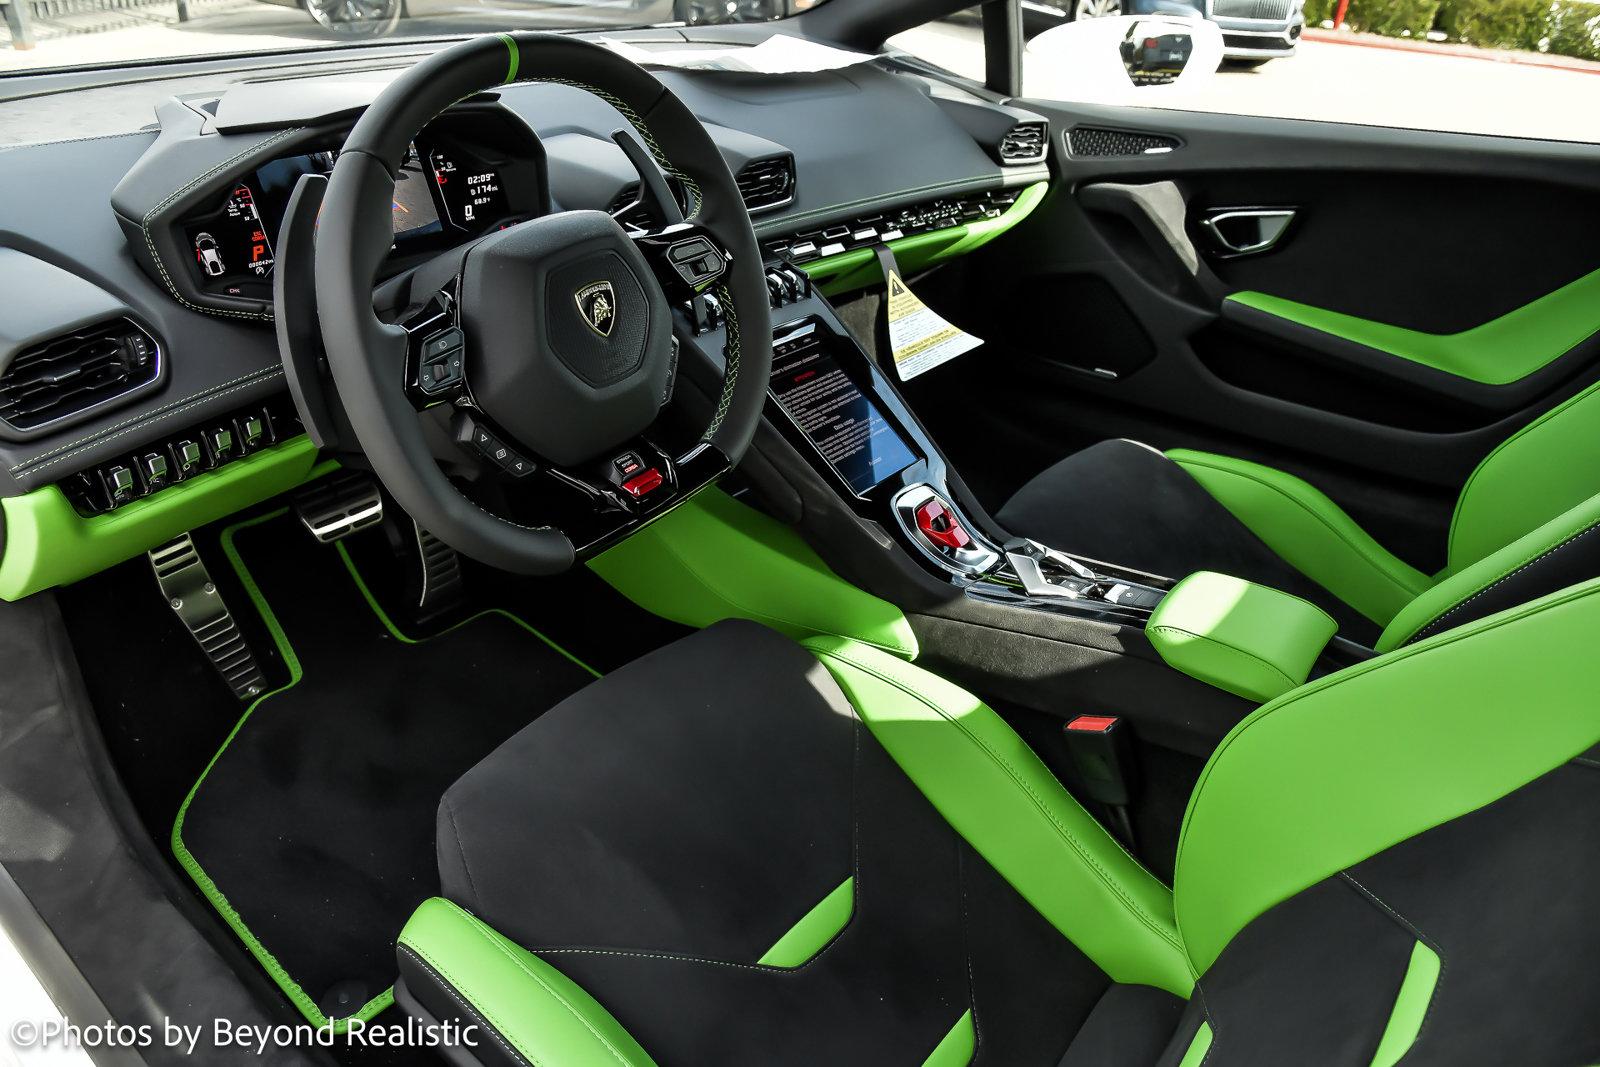 New 2023 Lamborghini Huracan Tecnica For Sale (Sold) | Lamborghini 